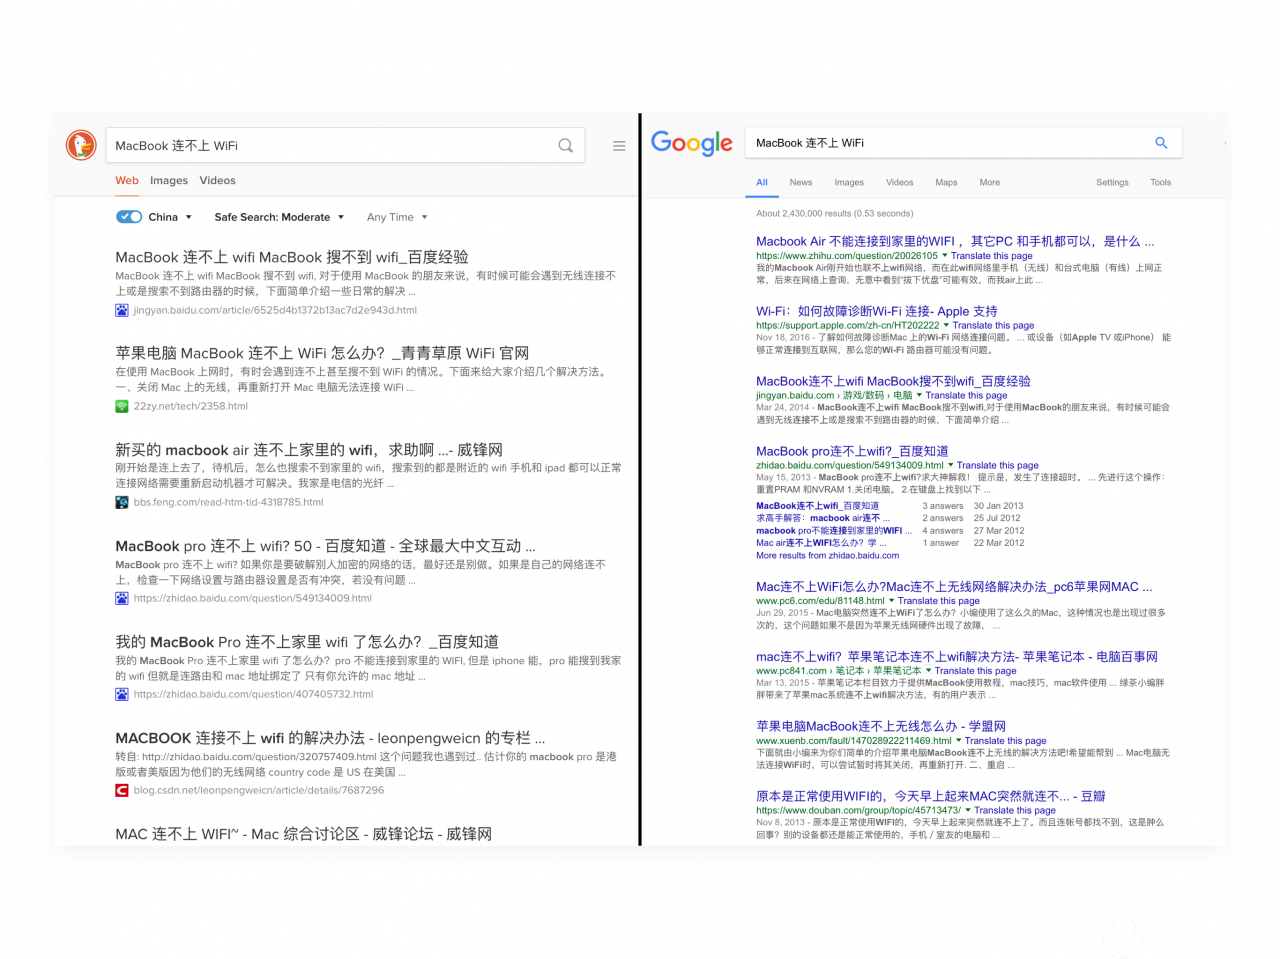 DuckDuckGo 和 Google 的中文搜索结果对比